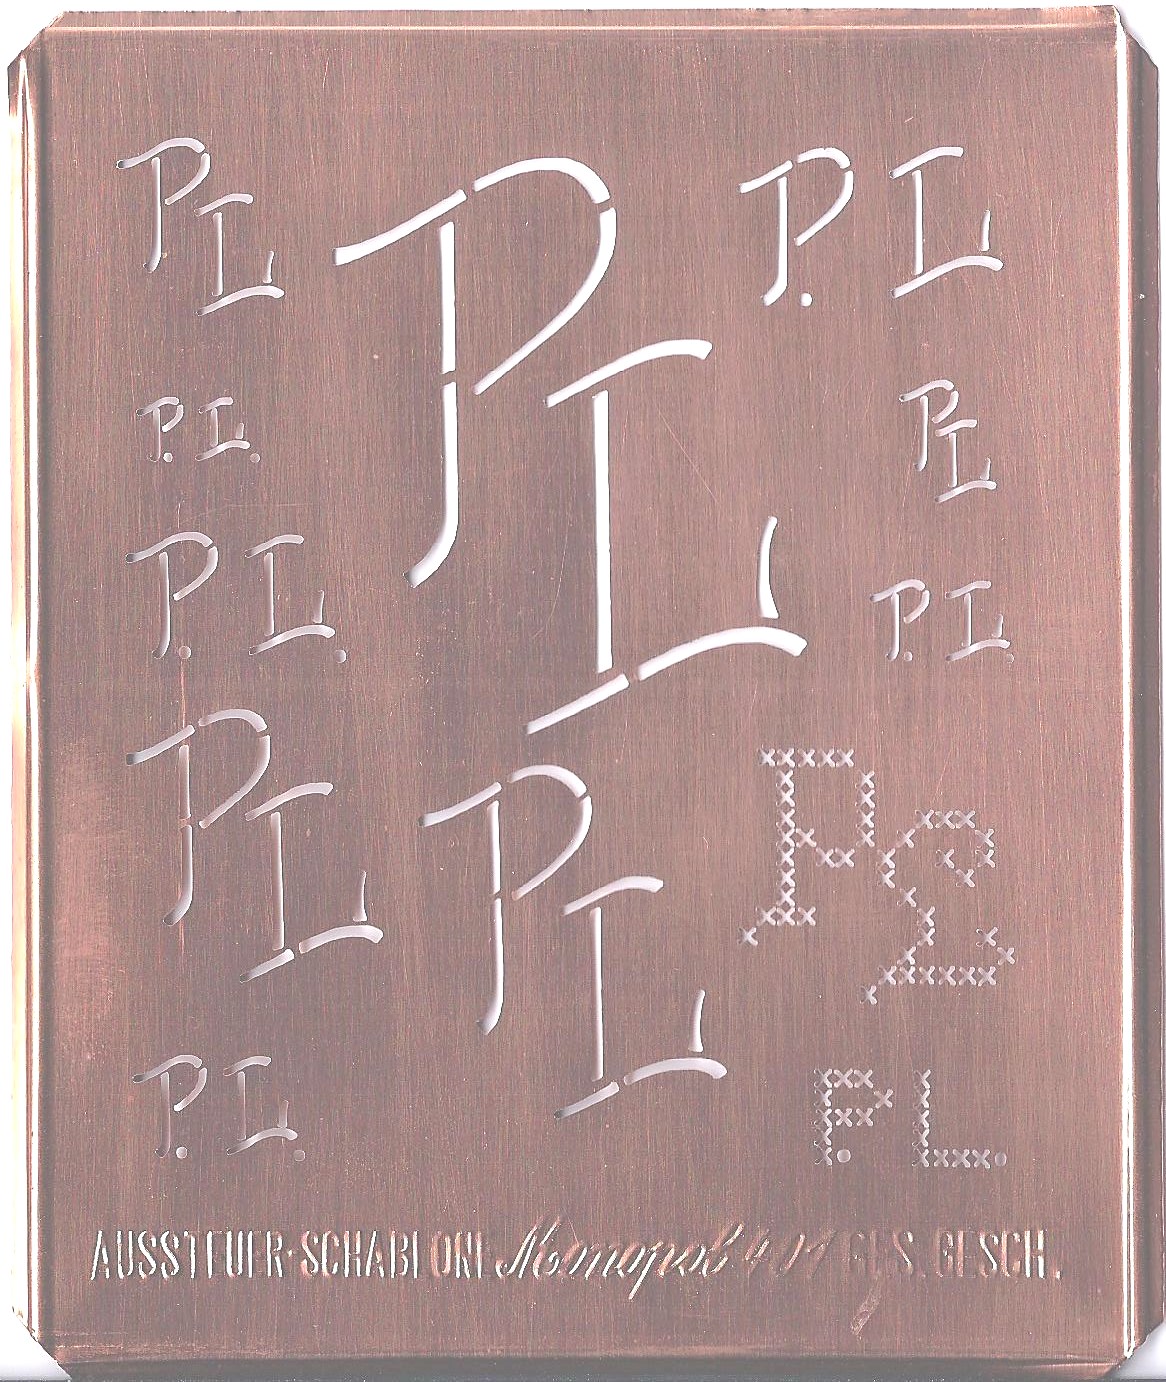 PL - Kupfer Monogrammschablone 12 x PL